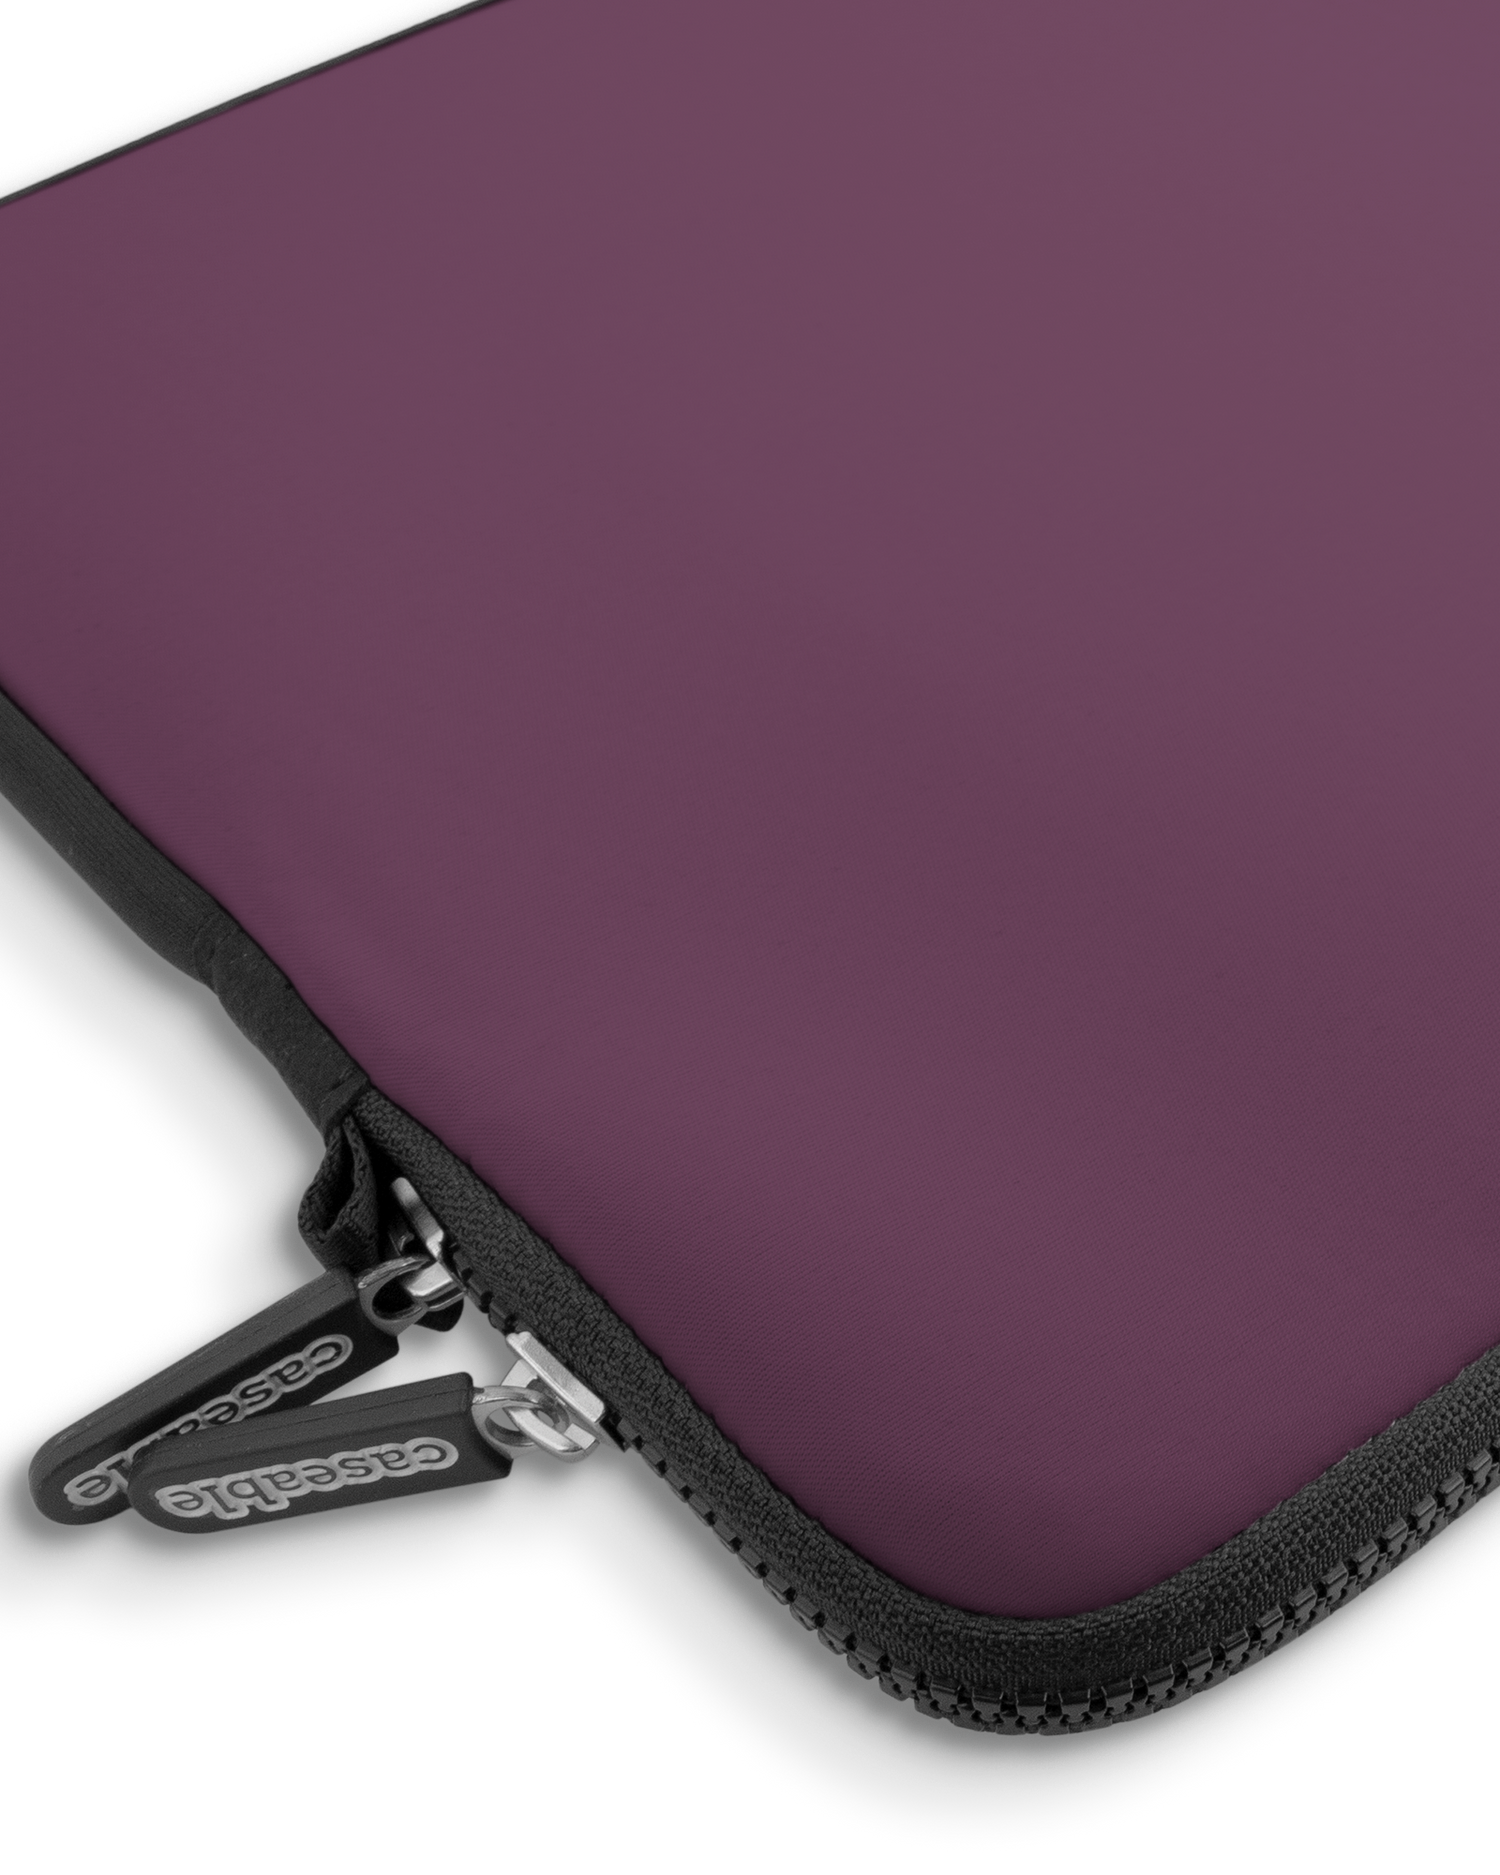 PLUM Premium Laptoptasche 15 Zoll mit Gerät im Inneren